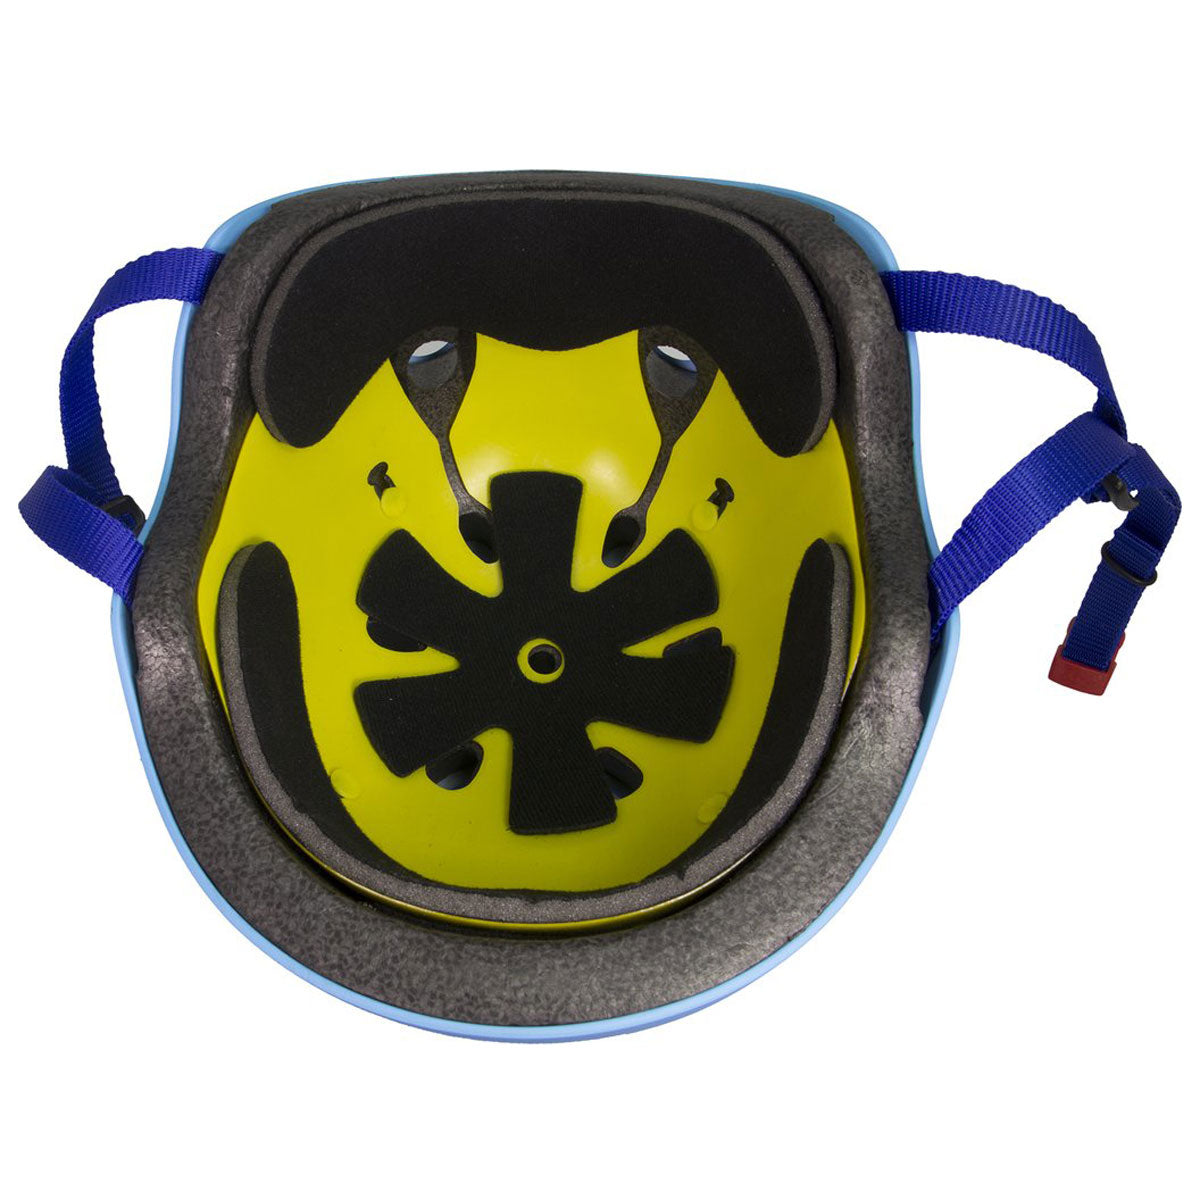 Triple Eight Dual Certified Mips Helmet - Black Rubber image 2